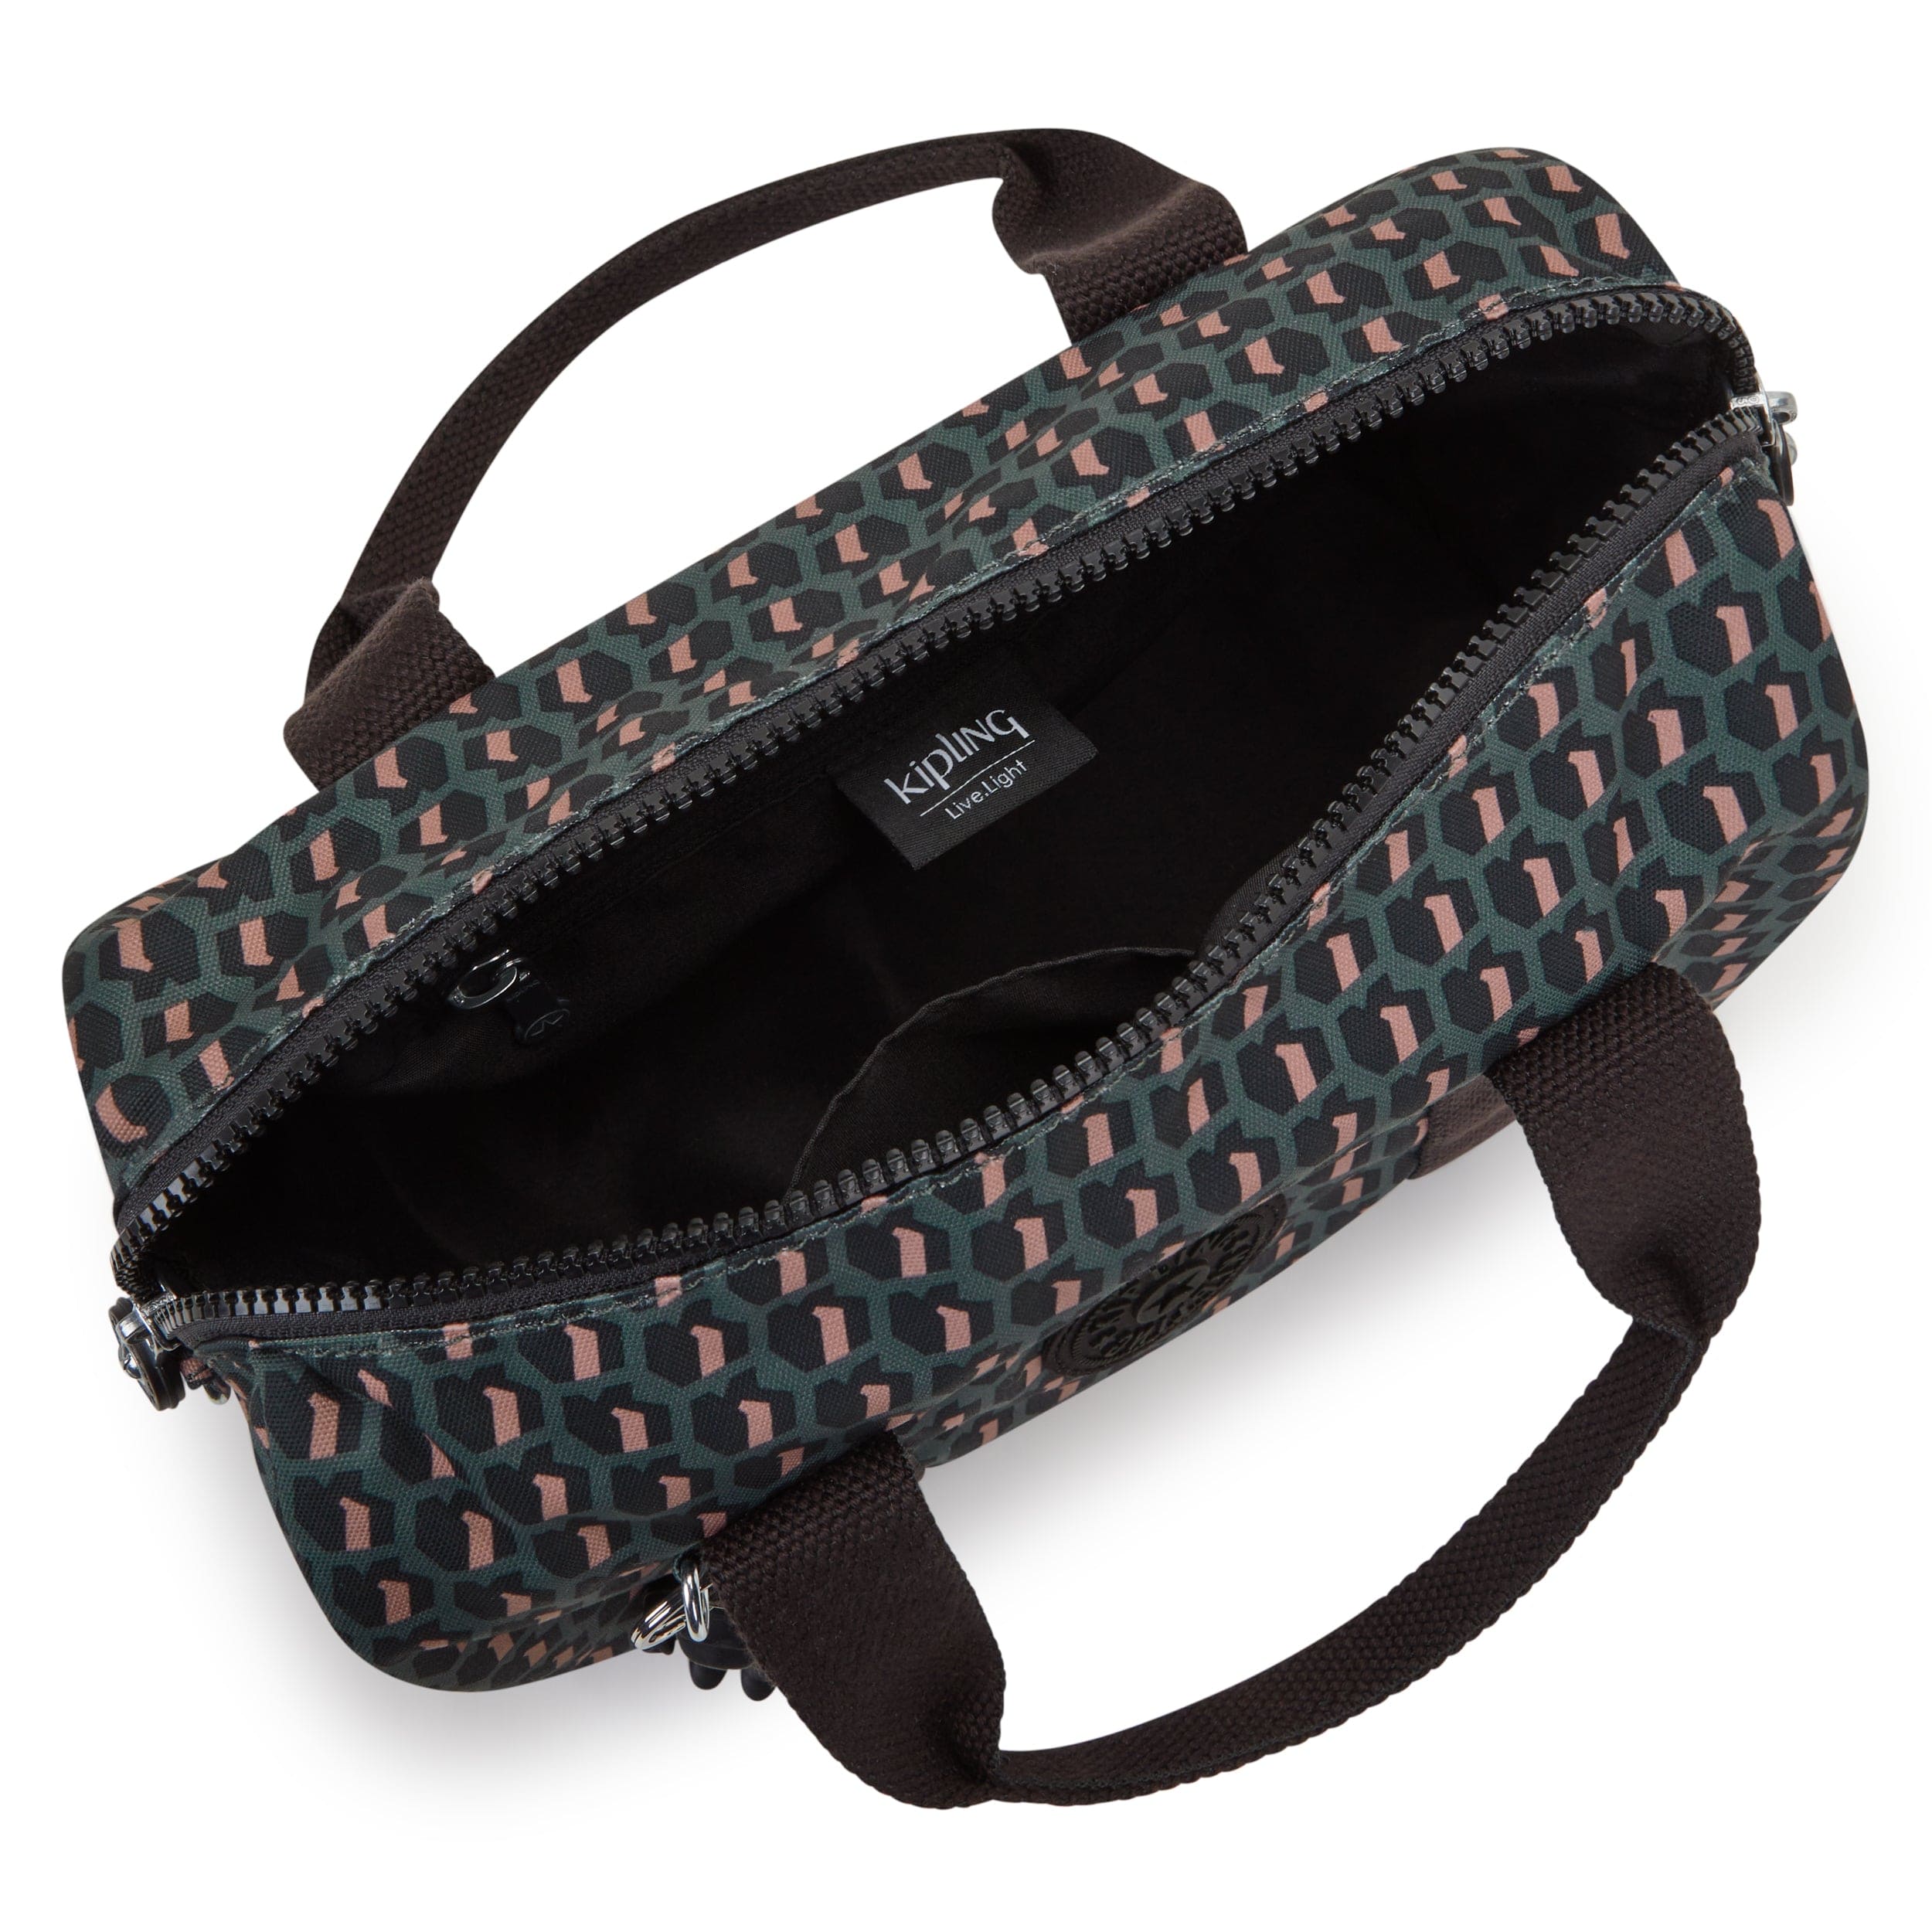 Kipling-Bina M-Medium Handbag (With Detachable Shoulderstrap)-3D K Pink-I7990-E1A